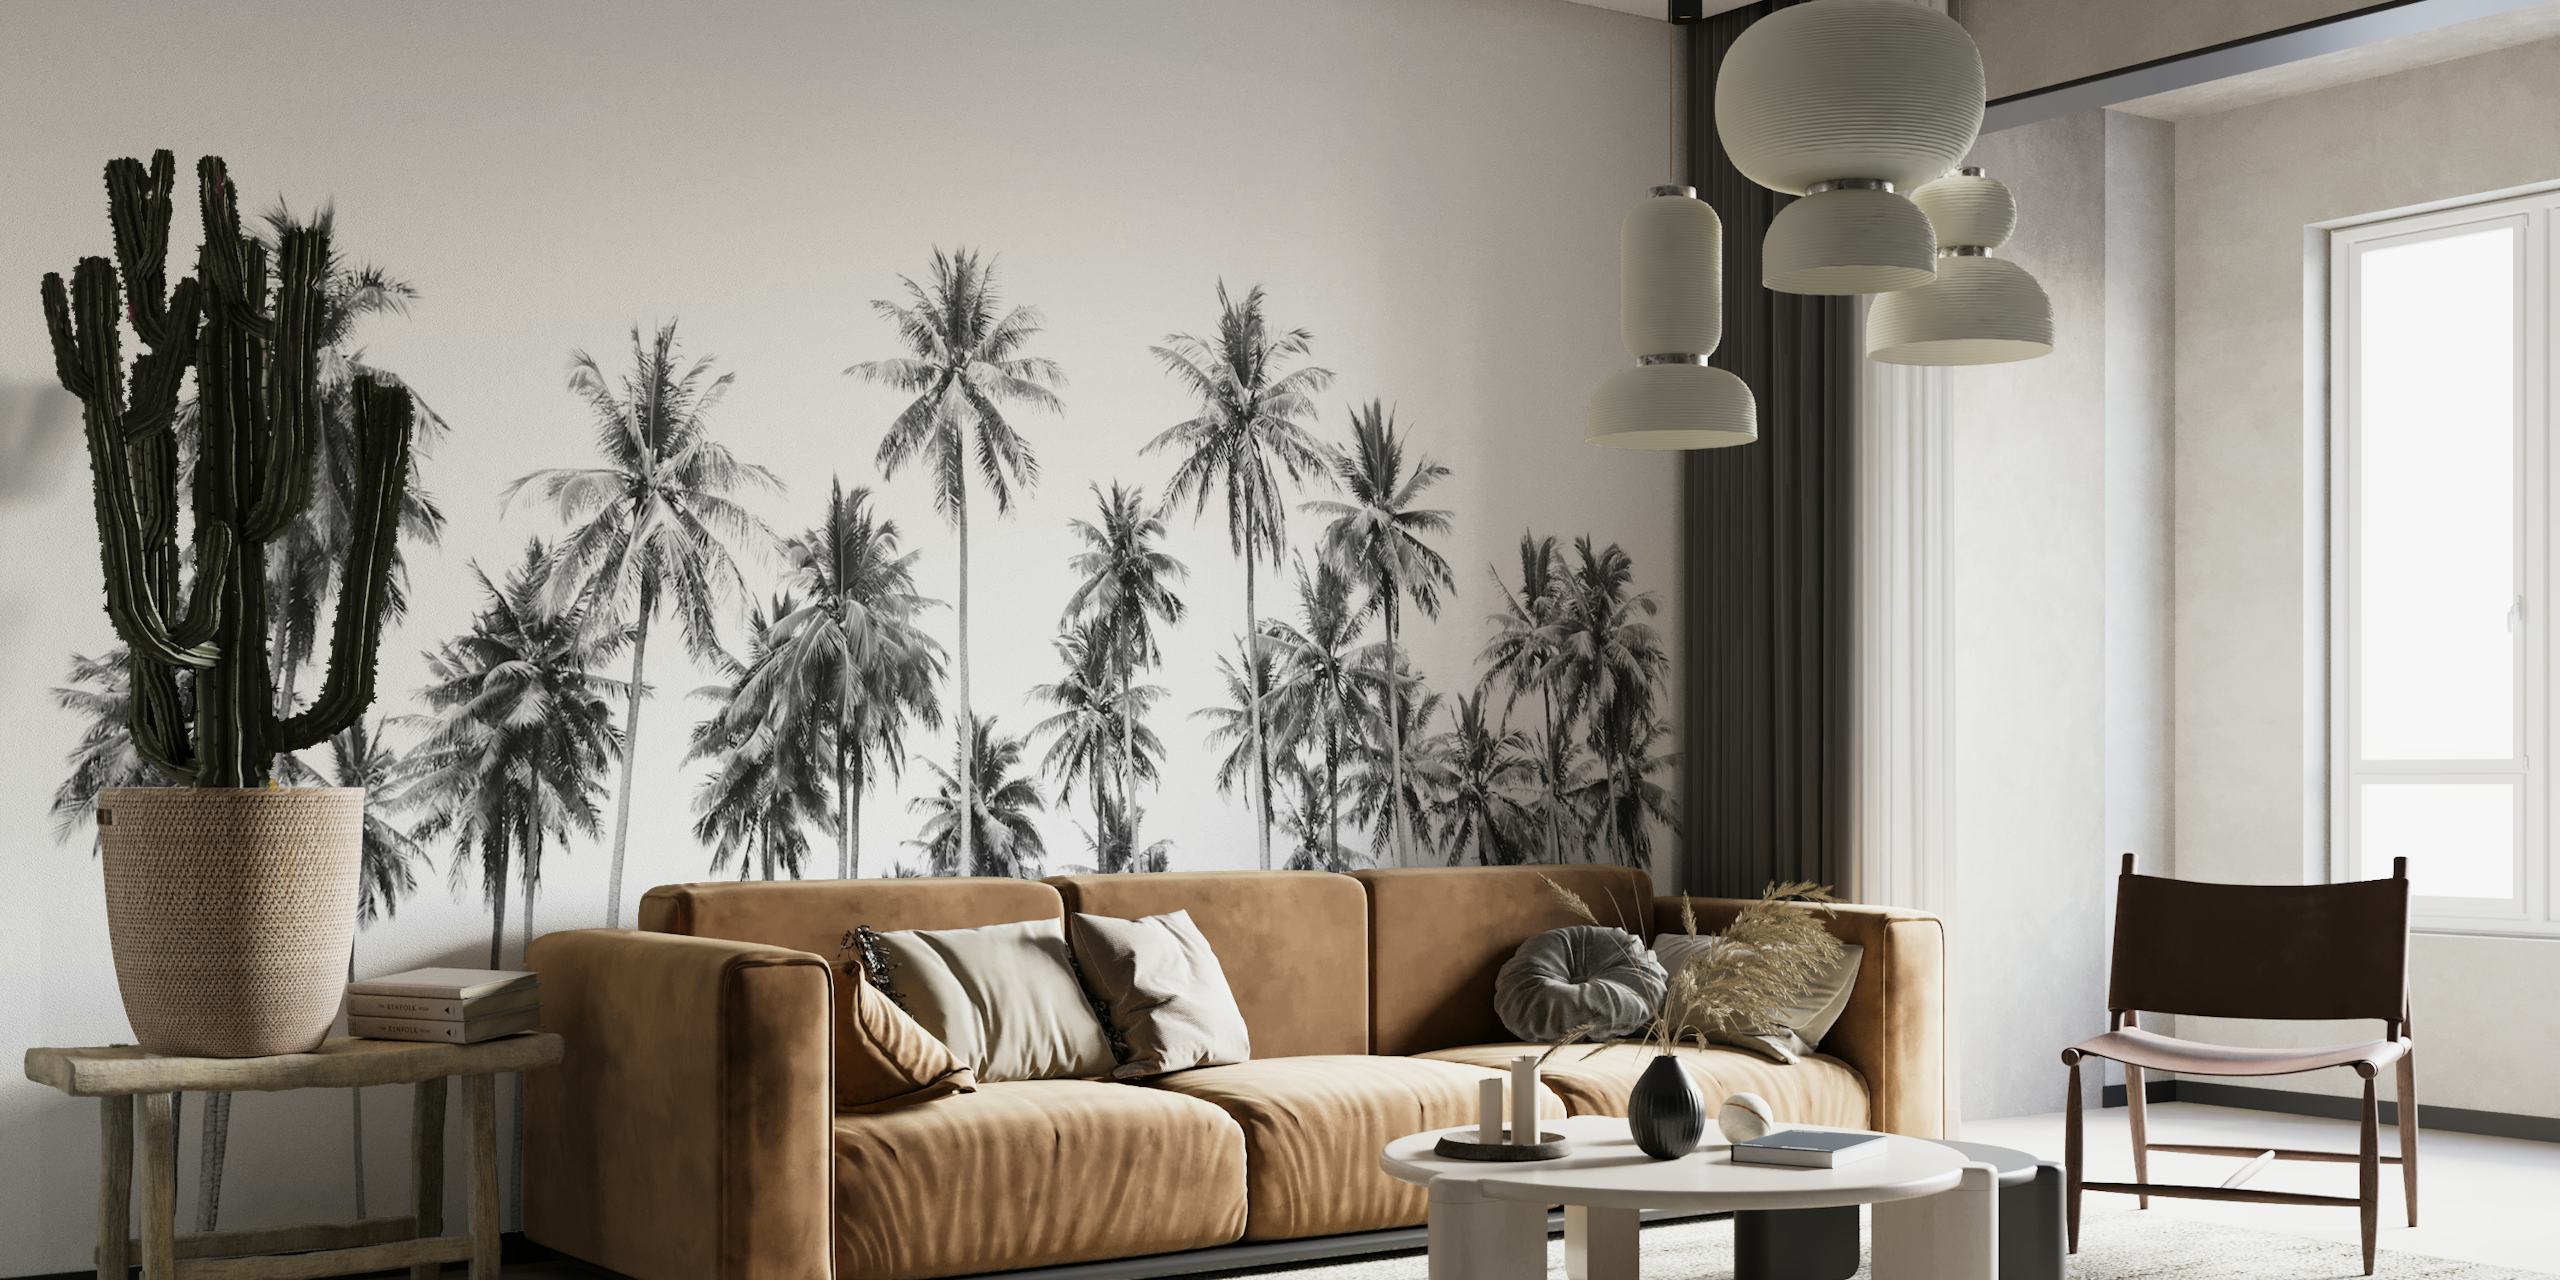 Schwarz-weißes Wandgemälde mit hohen Palmen in einer Dschungelumgebung